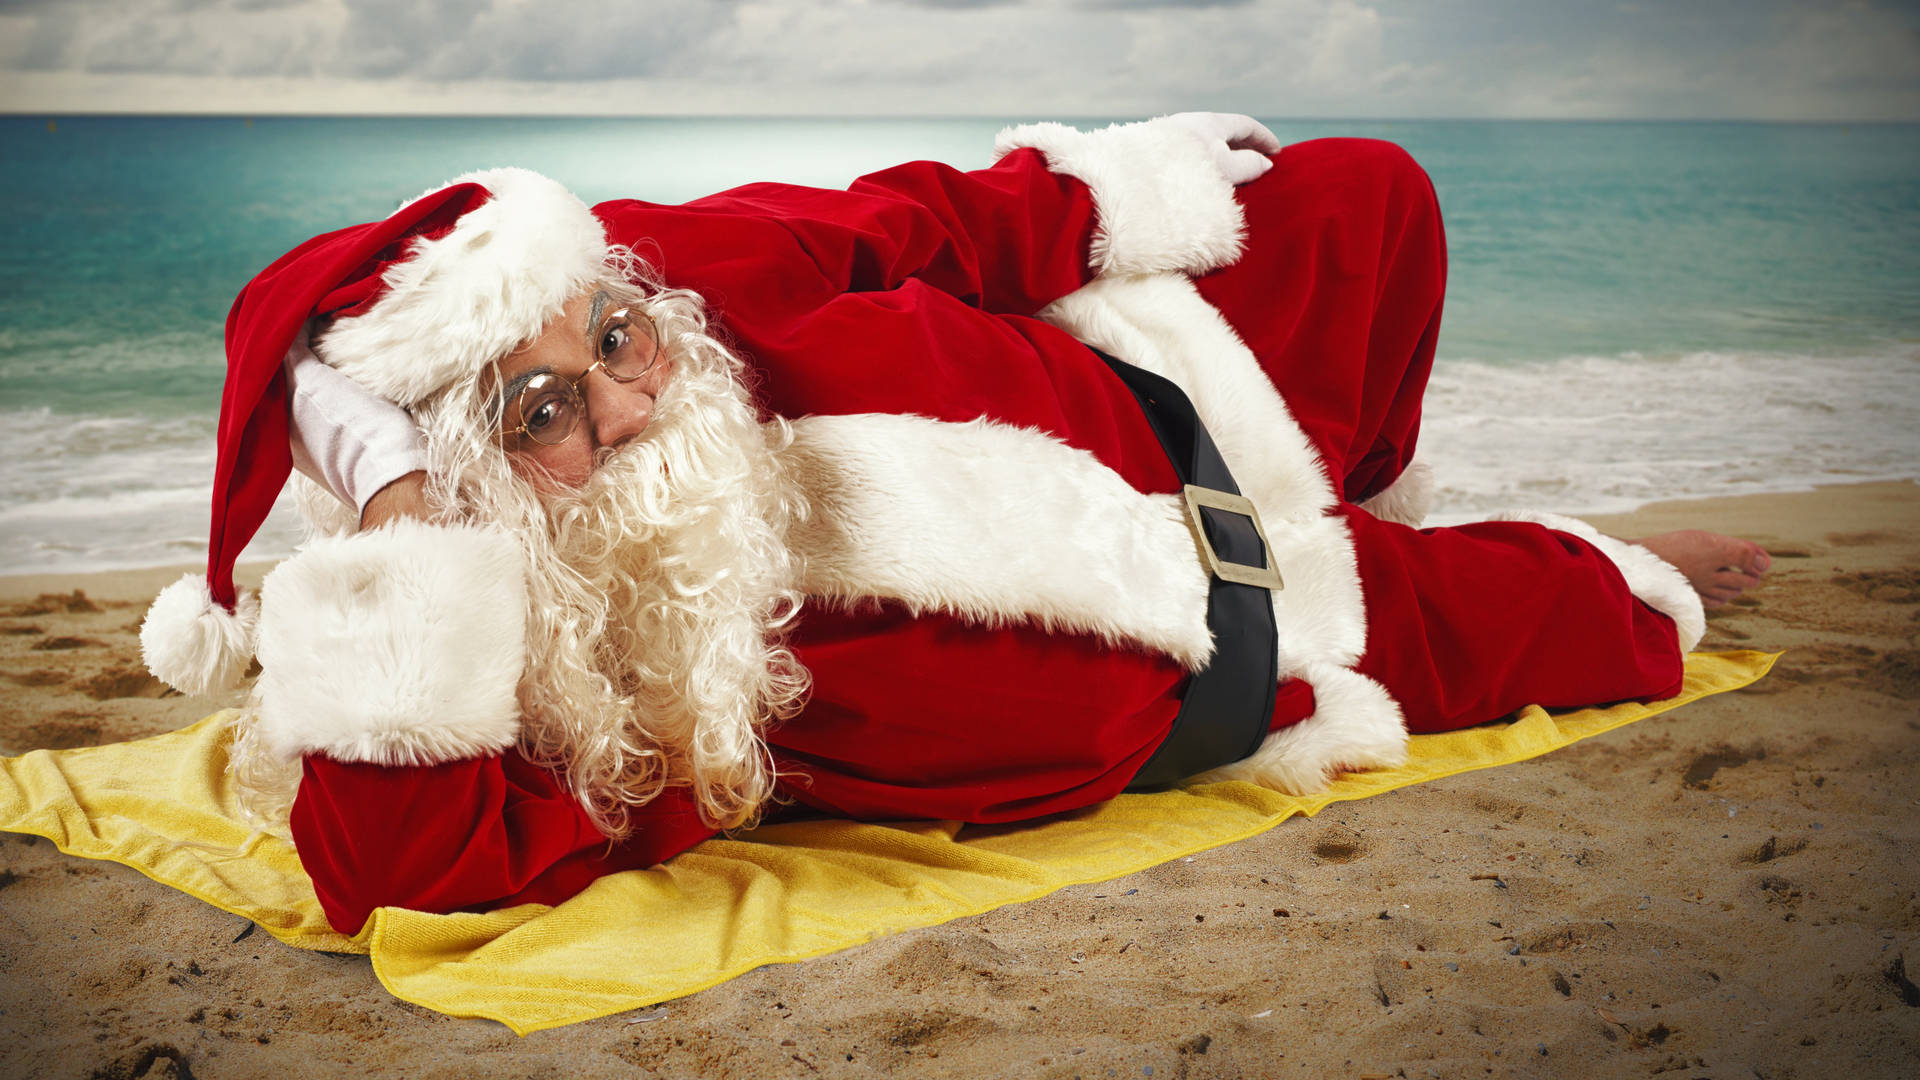 Santa Claus In The Beach